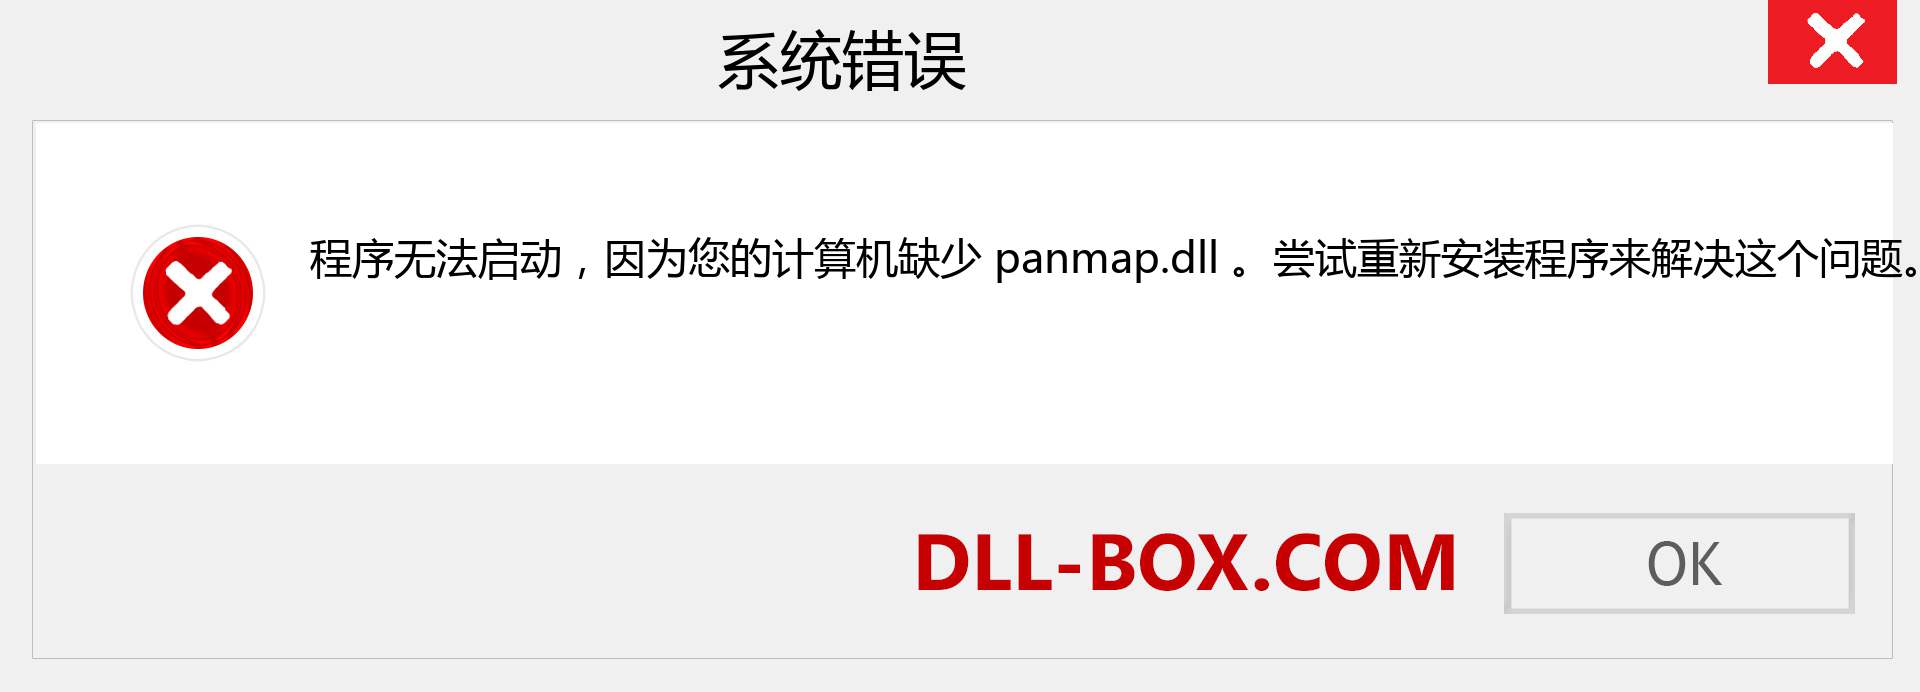 panmap.dll 文件丢失？。 适用于 Windows 7、8、10 的下载 - 修复 Windows、照片、图像上的 panmap dll 丢失错误